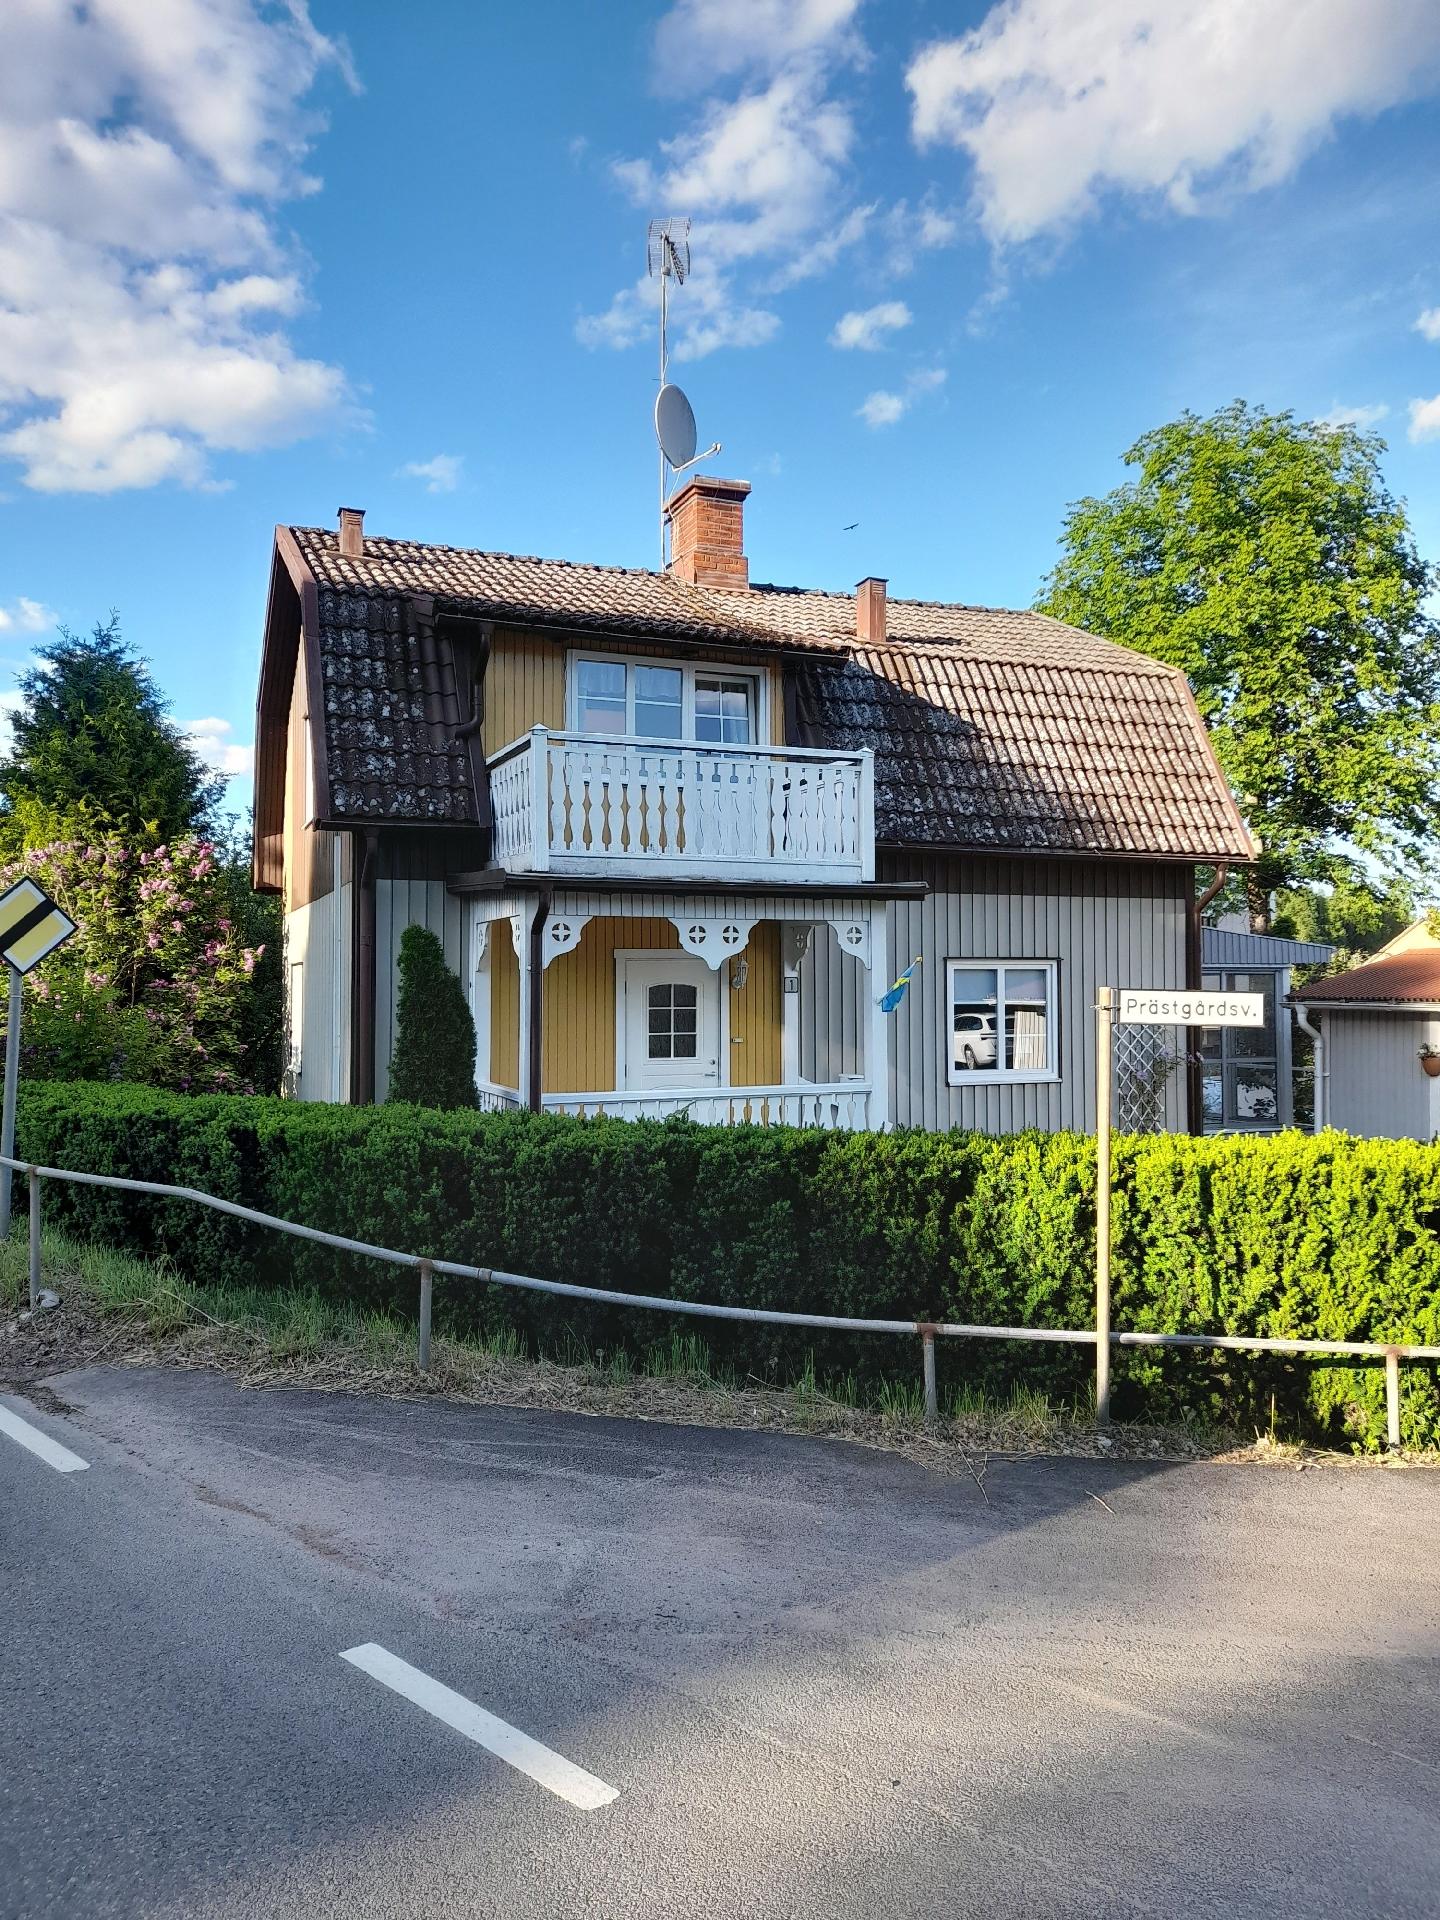 Typisch schwedisches Ferienhaus mit Garten Ferienhaus in Europa